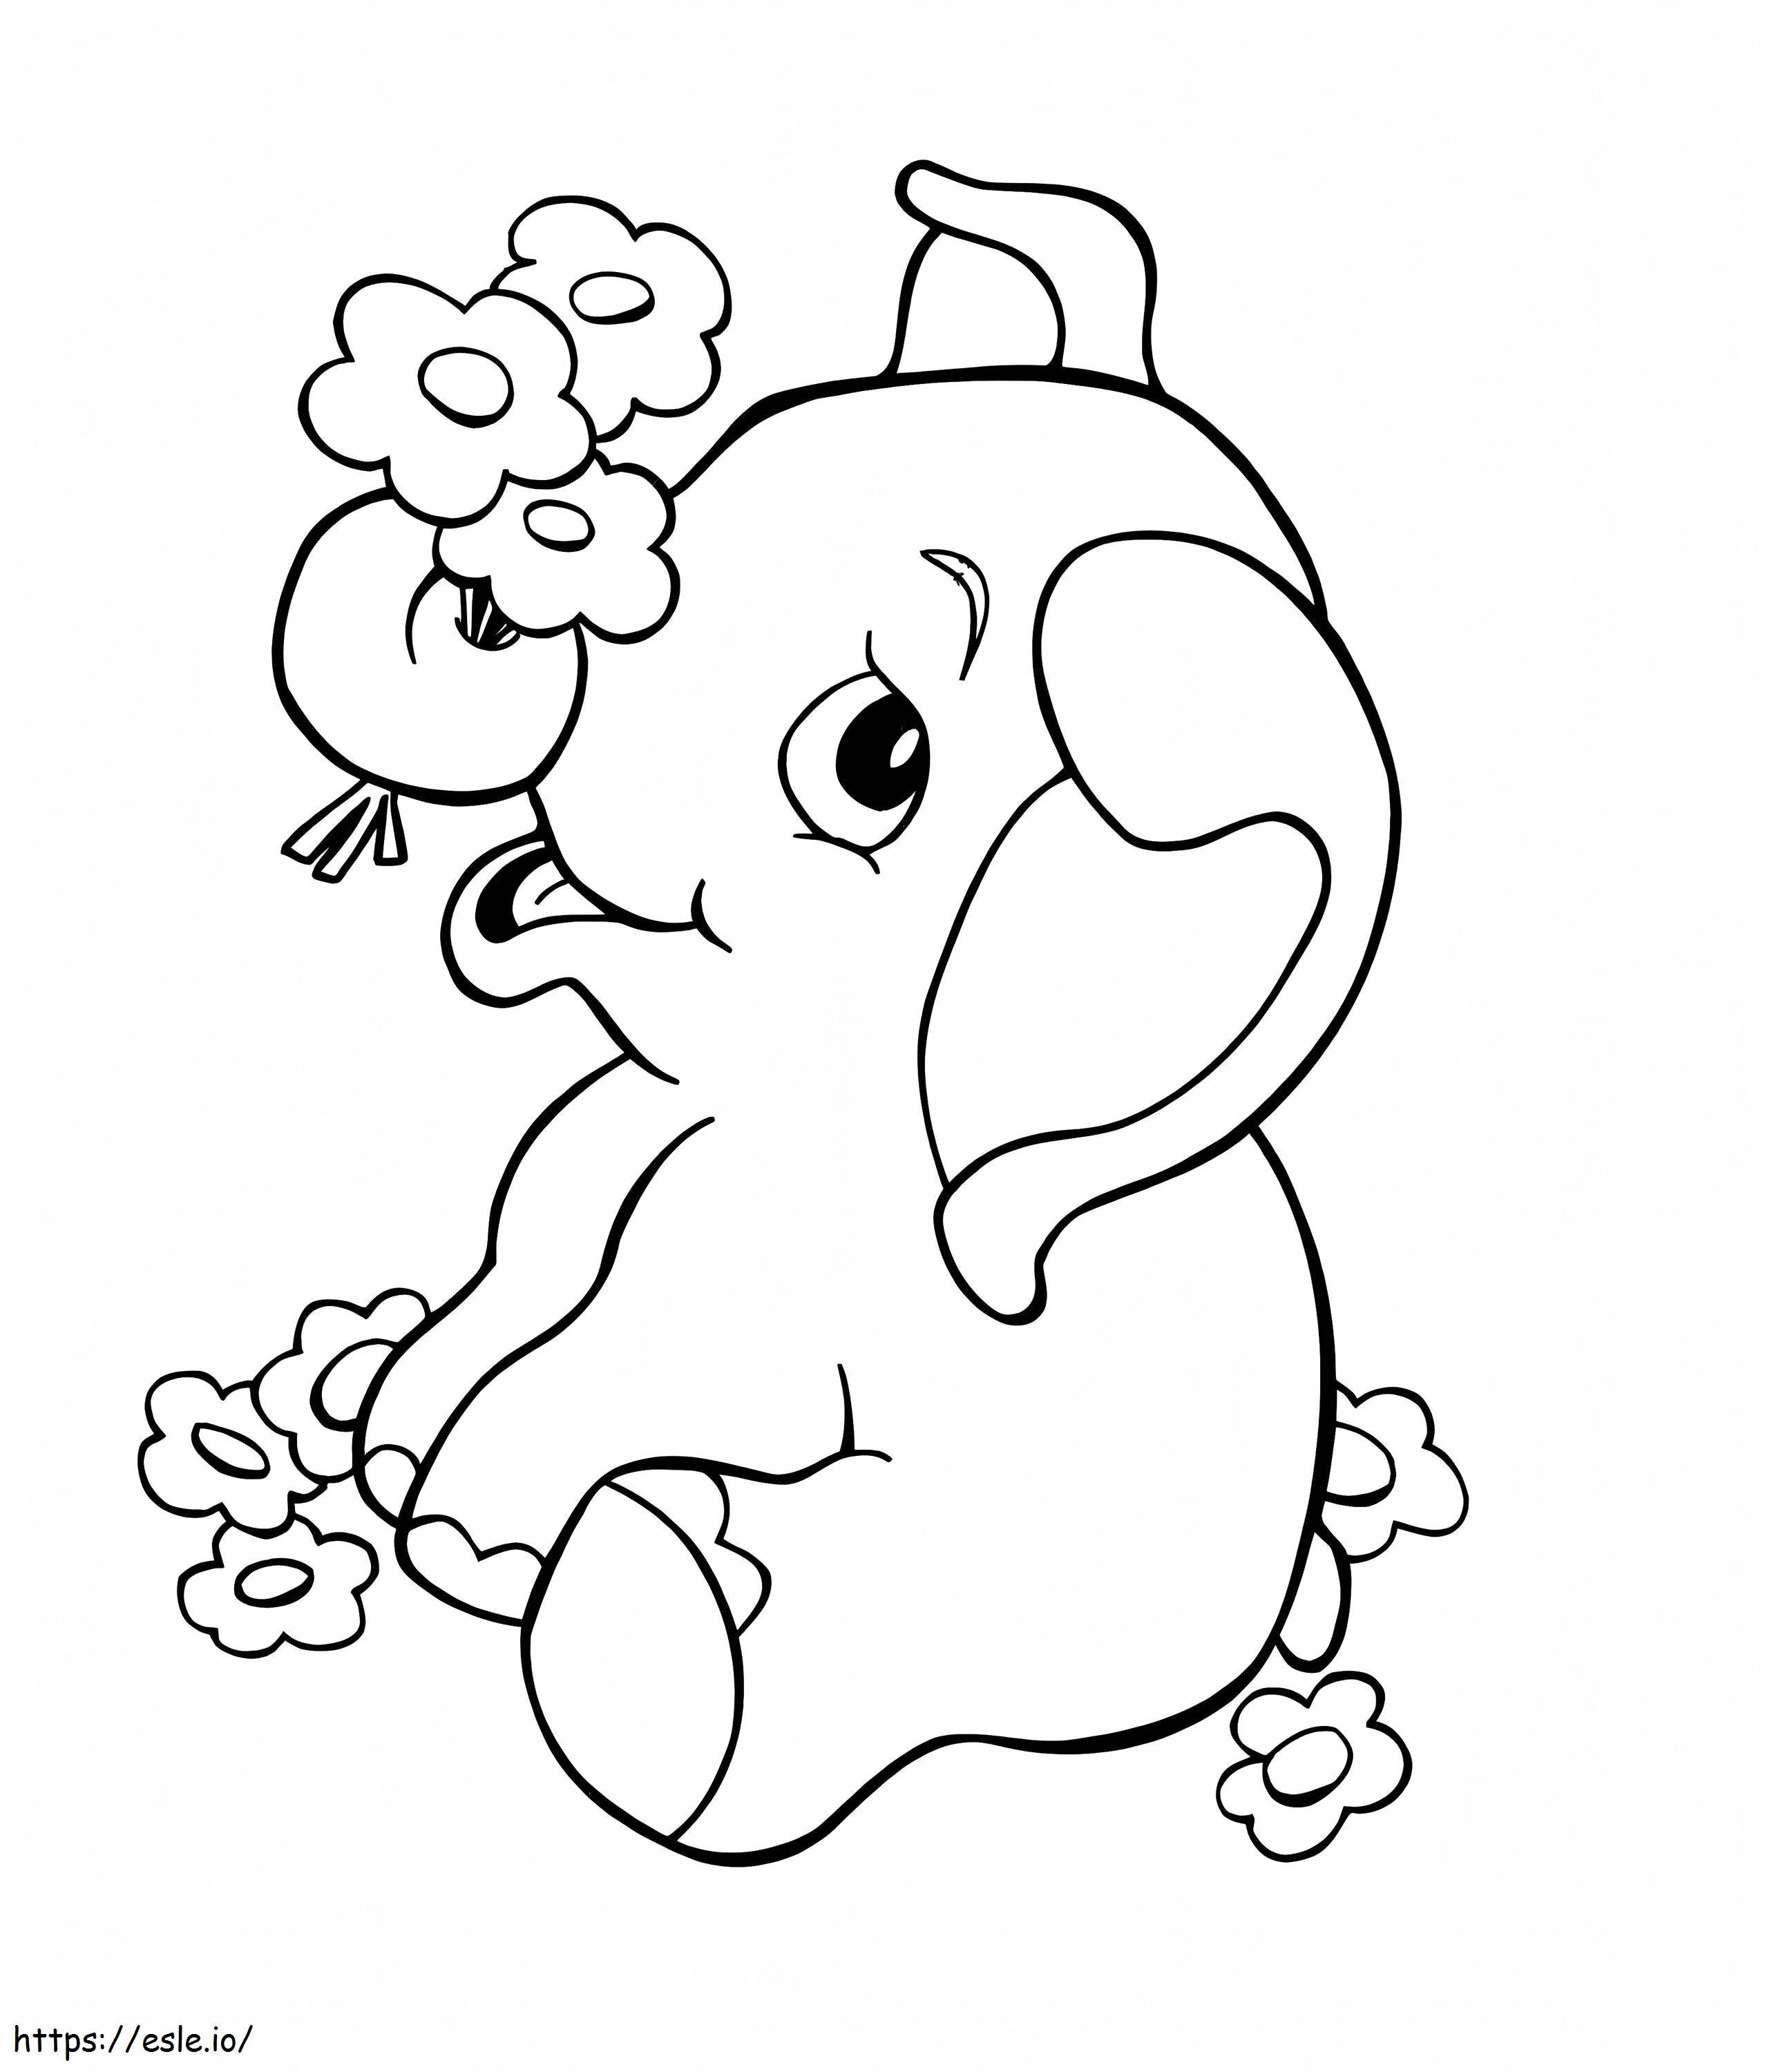 1570526314 Gajah Untuk Anak-anak Kartun Gajah Terbaik Gratis Cetak Pinjaman Perbaikan Rumah Bayi Anak-anak Untuk Kredit Macet Gambar Mewarnai